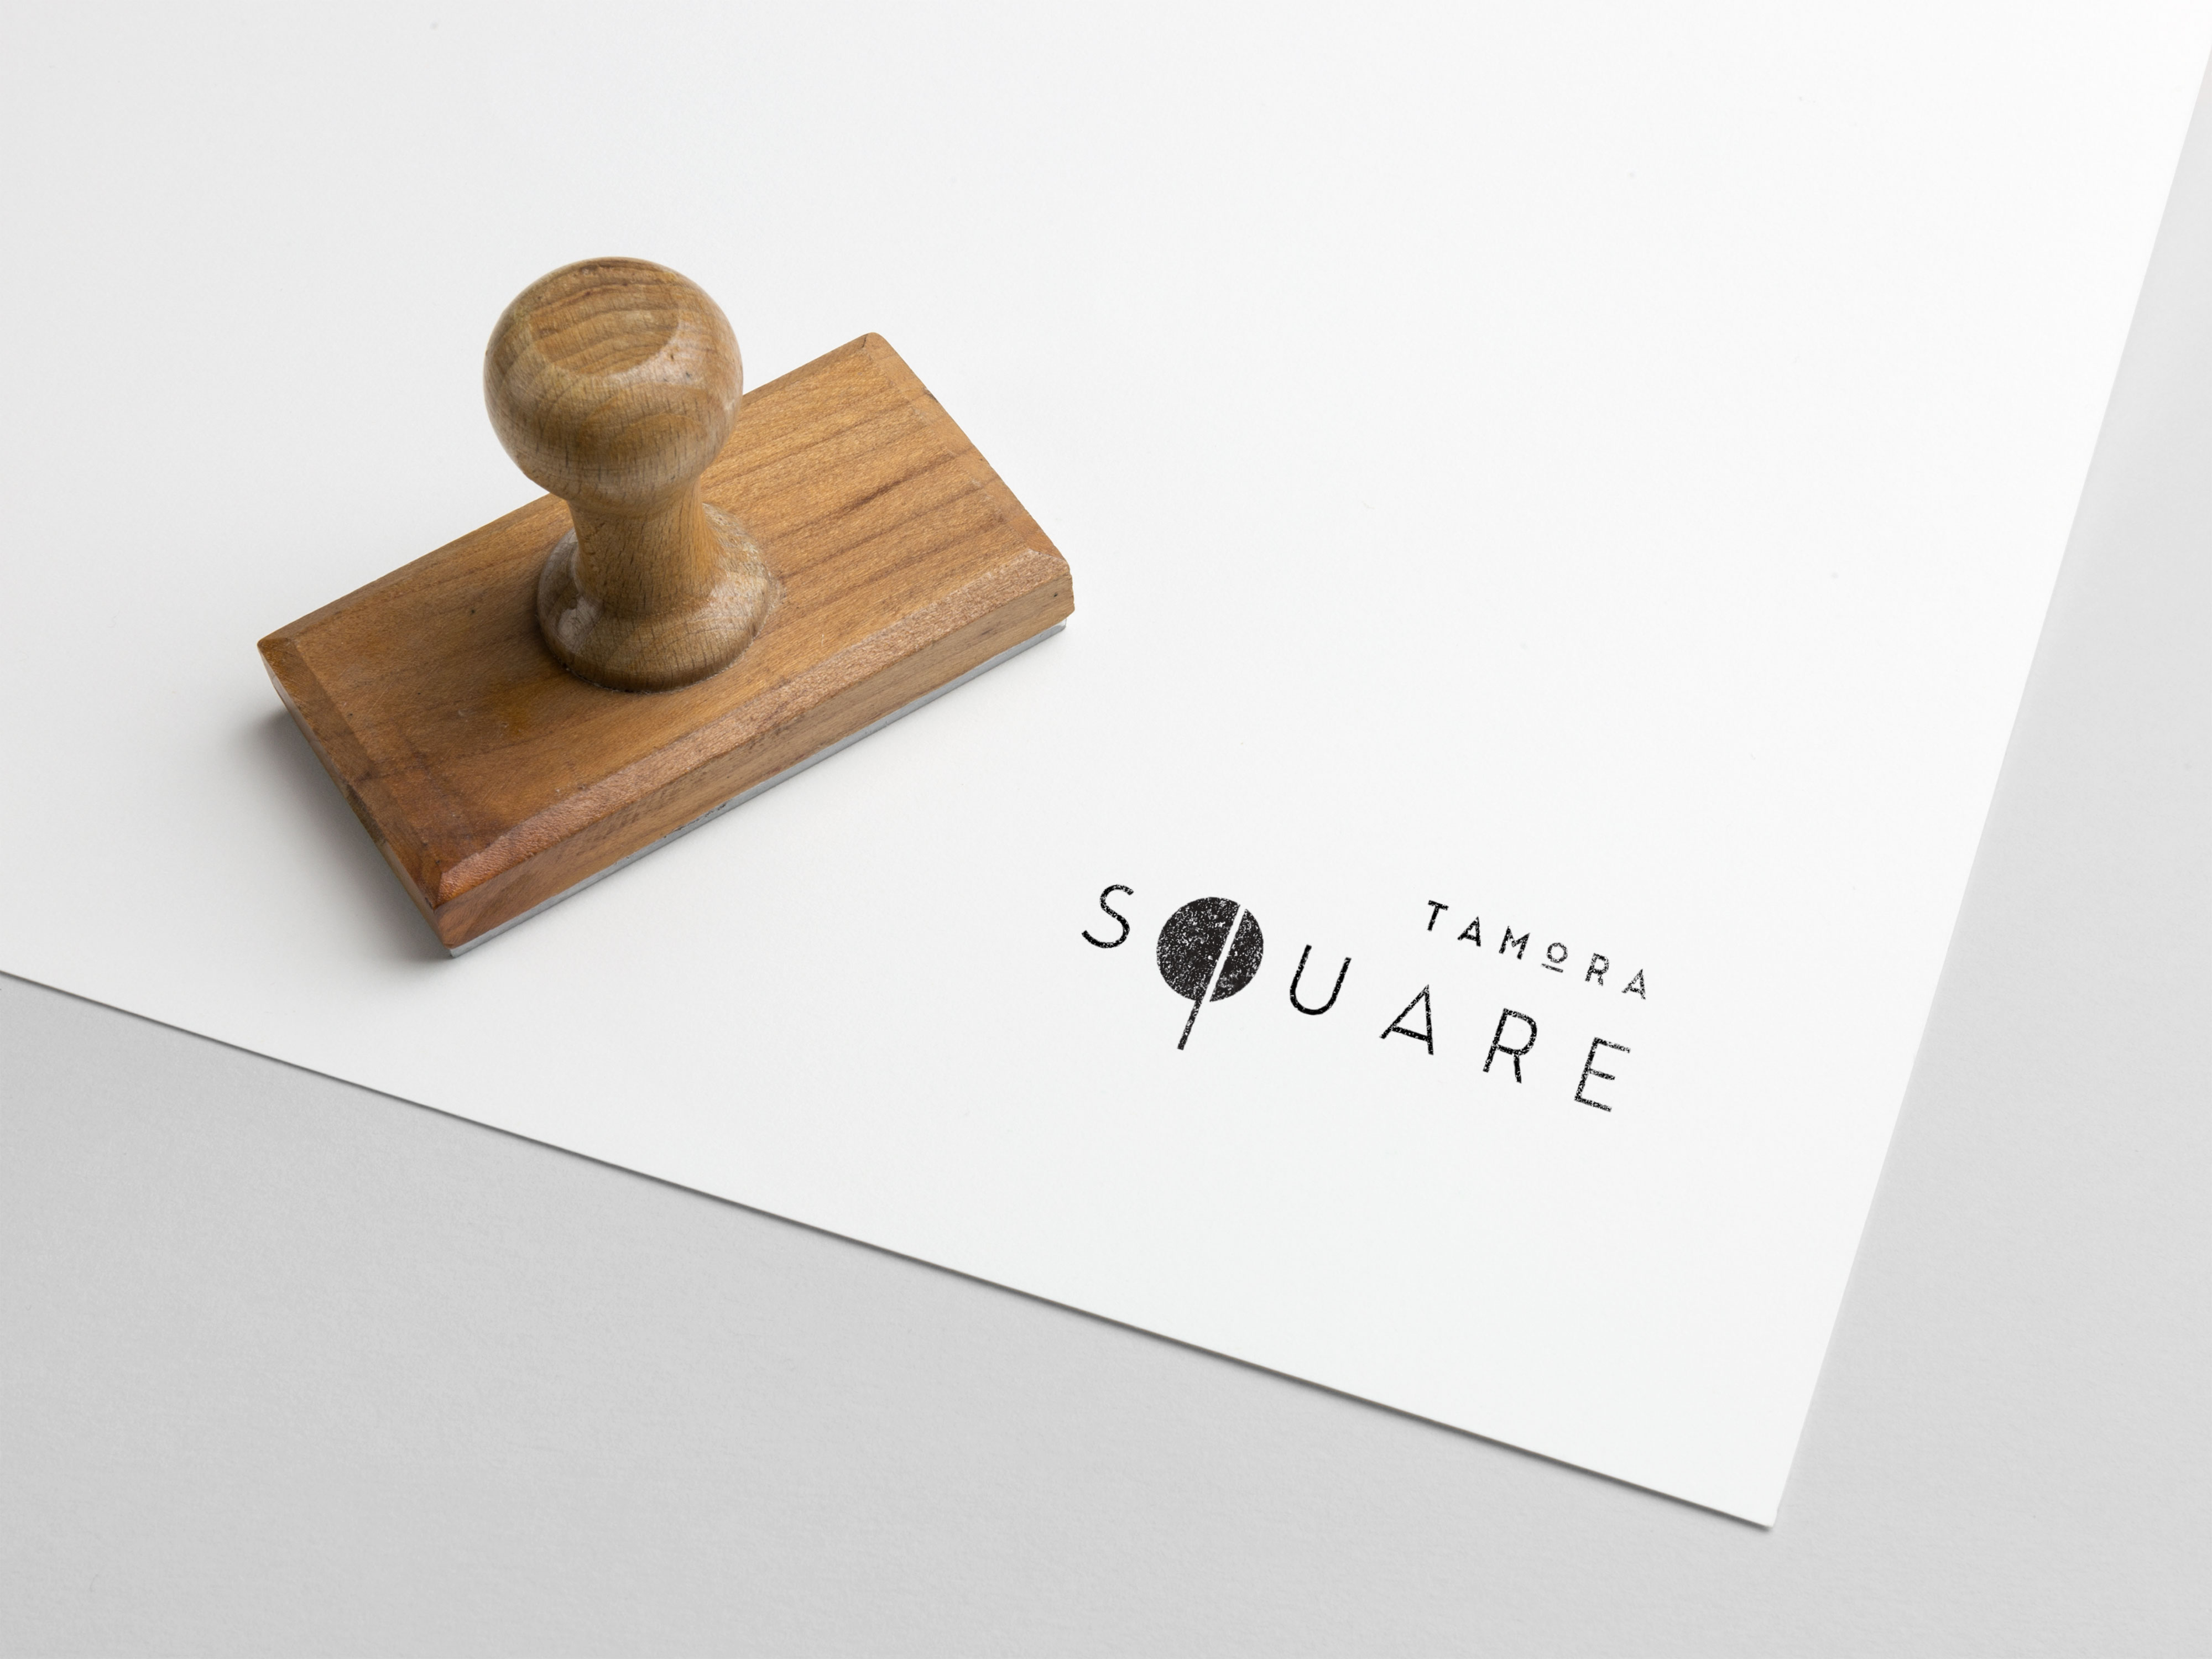 Tamora-Square-logo4